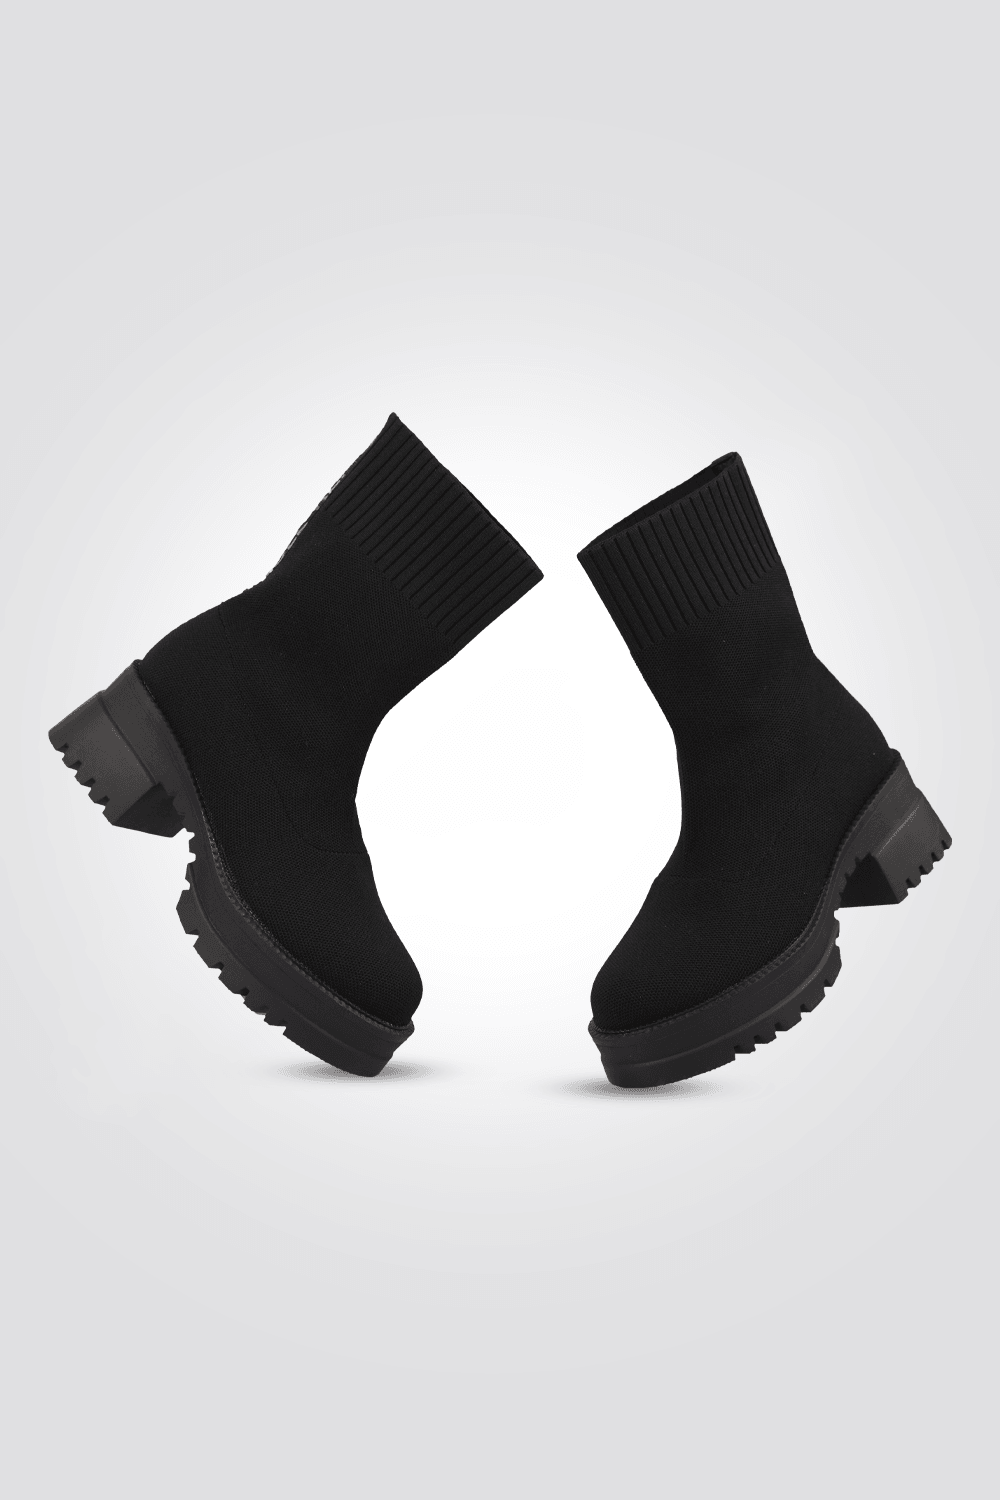 מגפיים לנשים בצבע שחור - MASHBIR//365